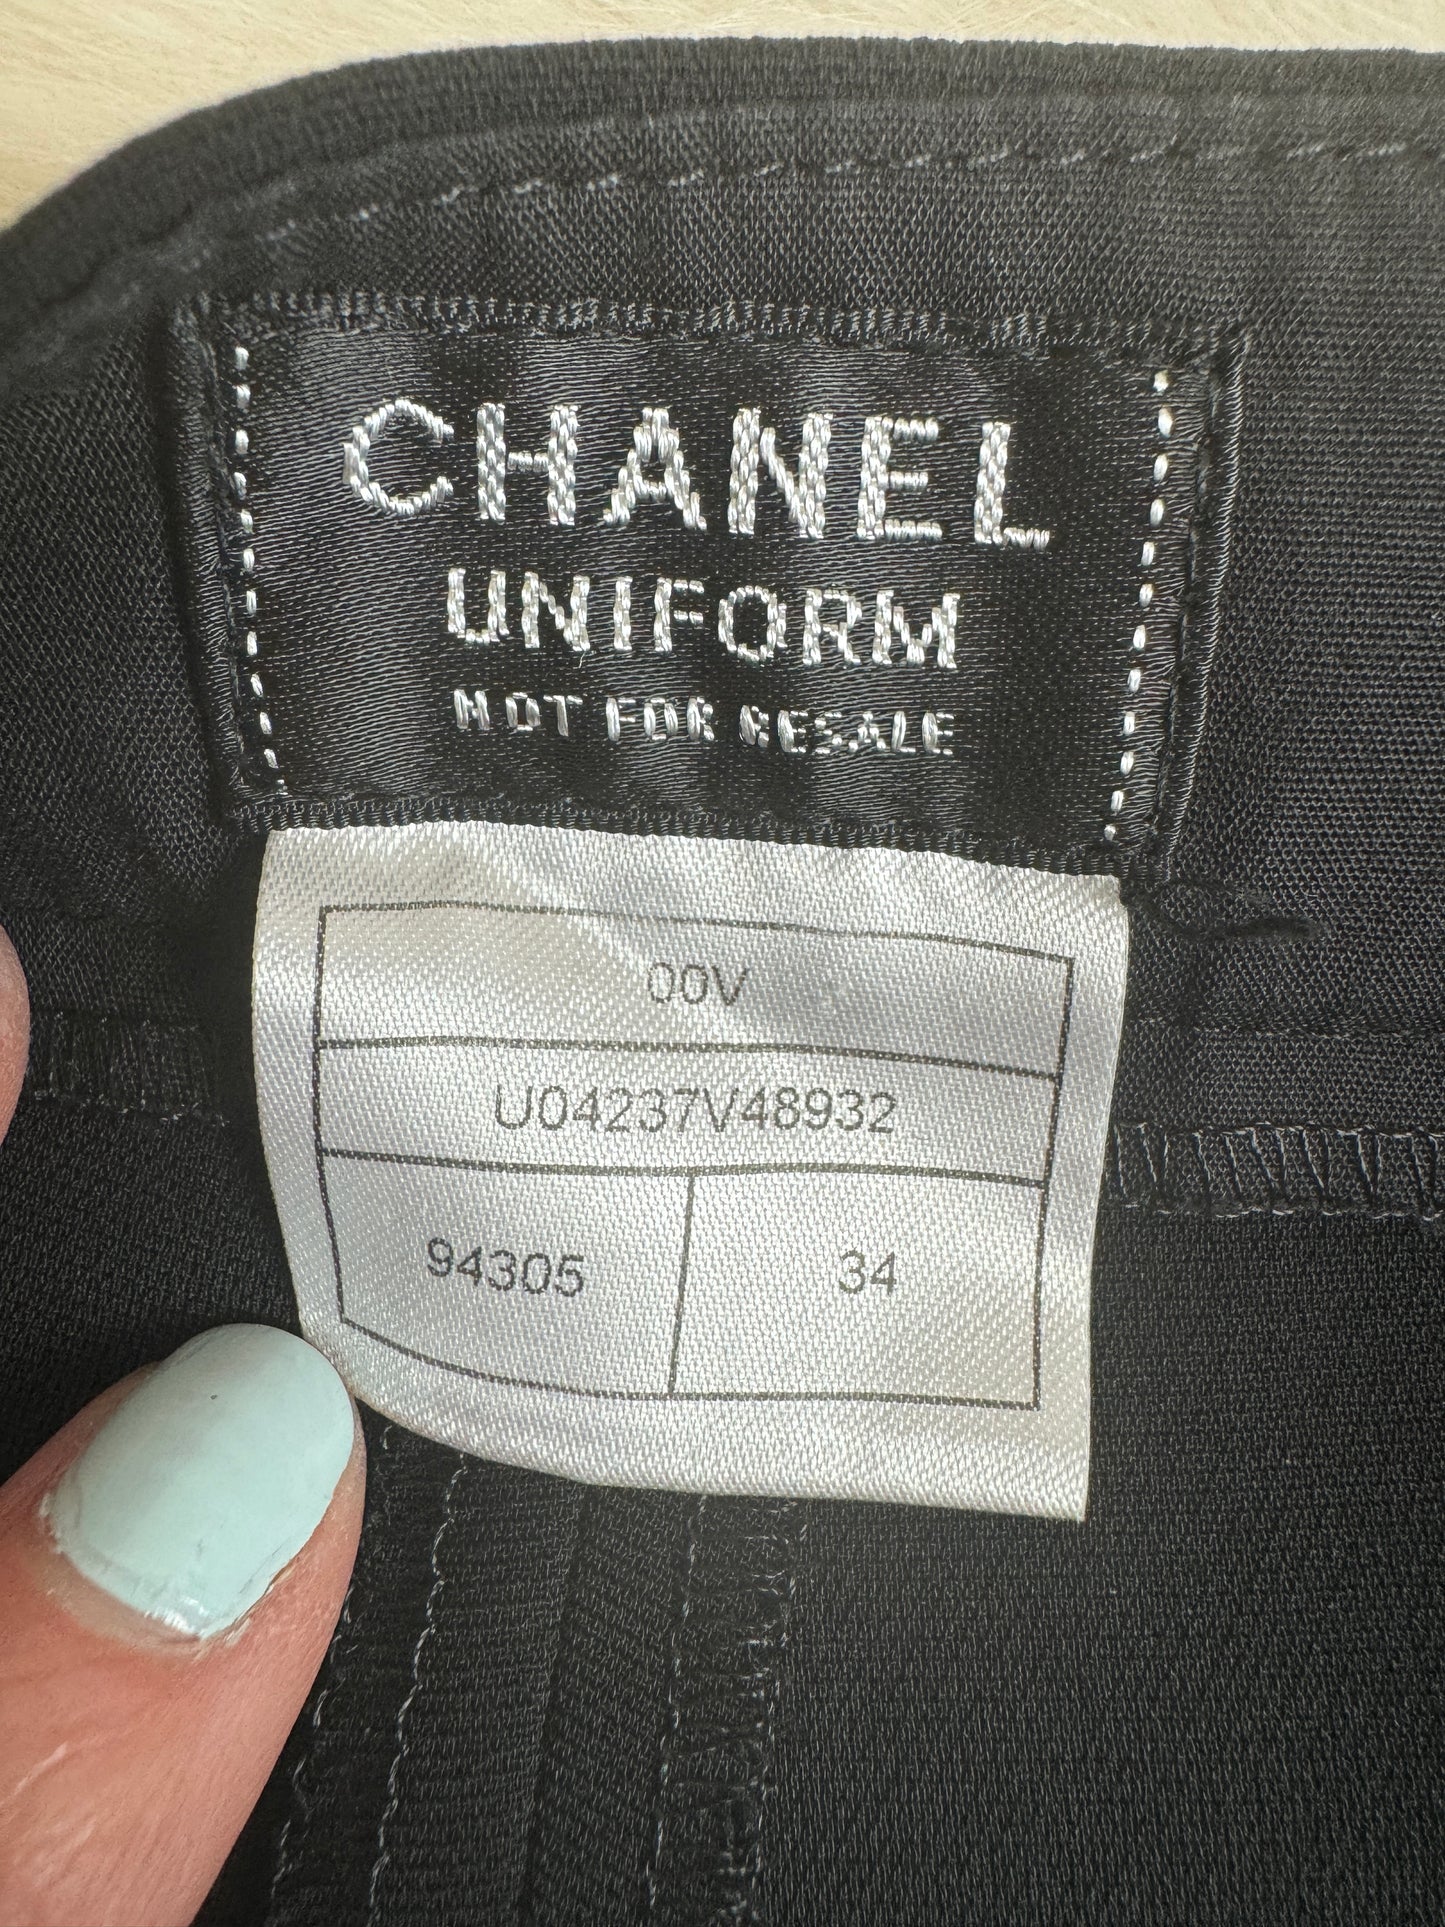 Chanel Uniform Black Crop Trouser